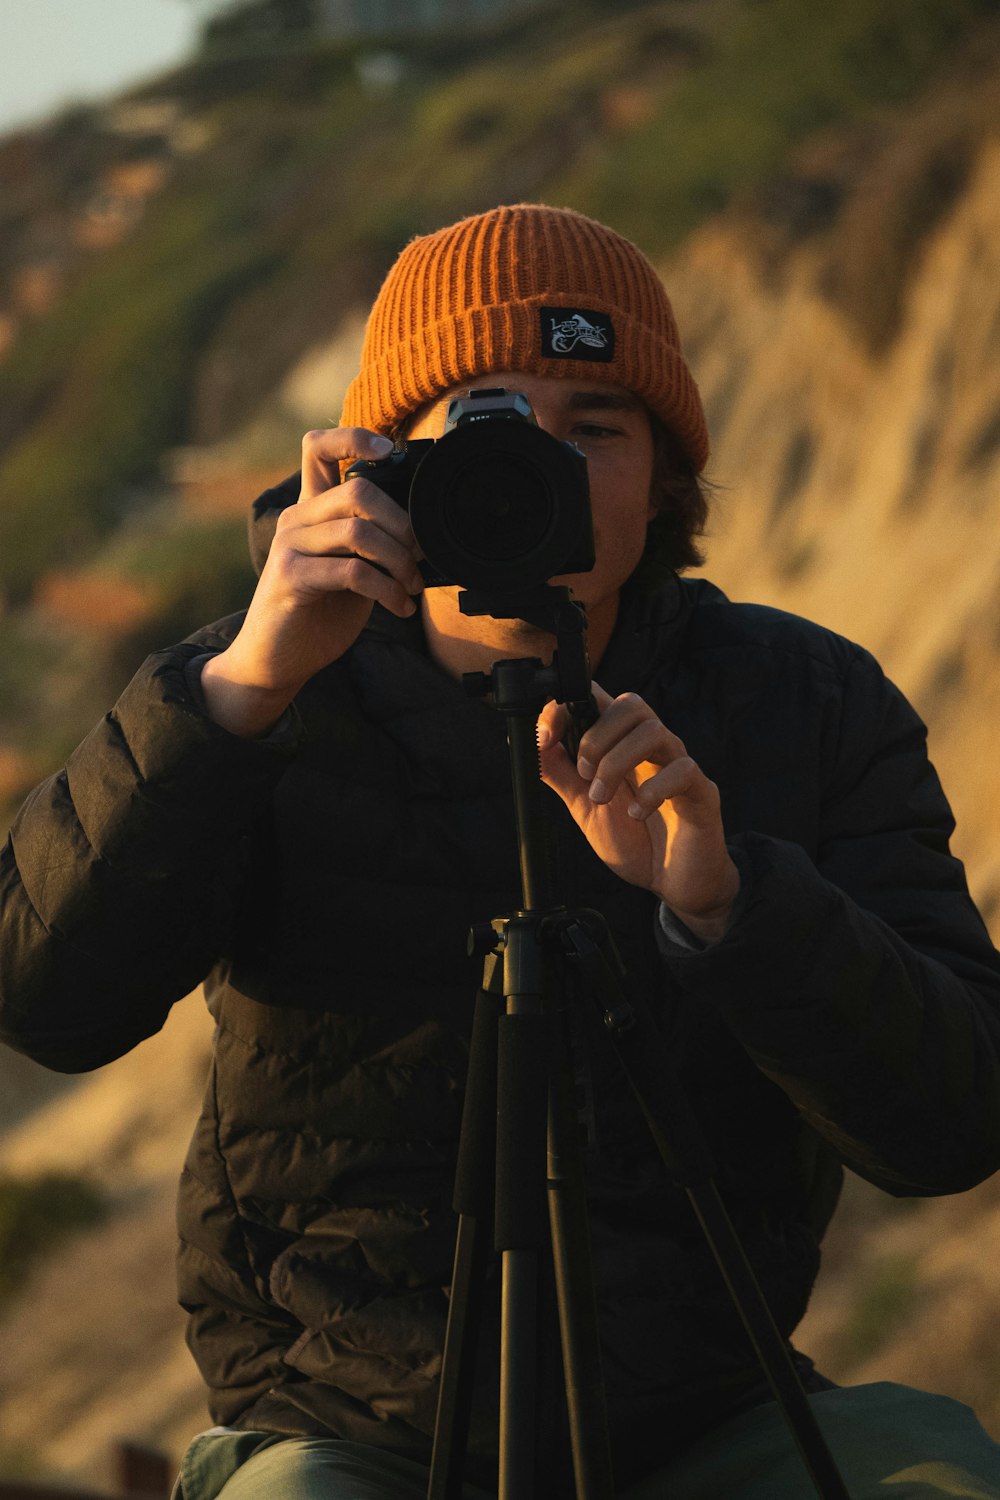 man in black jacket holding black dslr camera